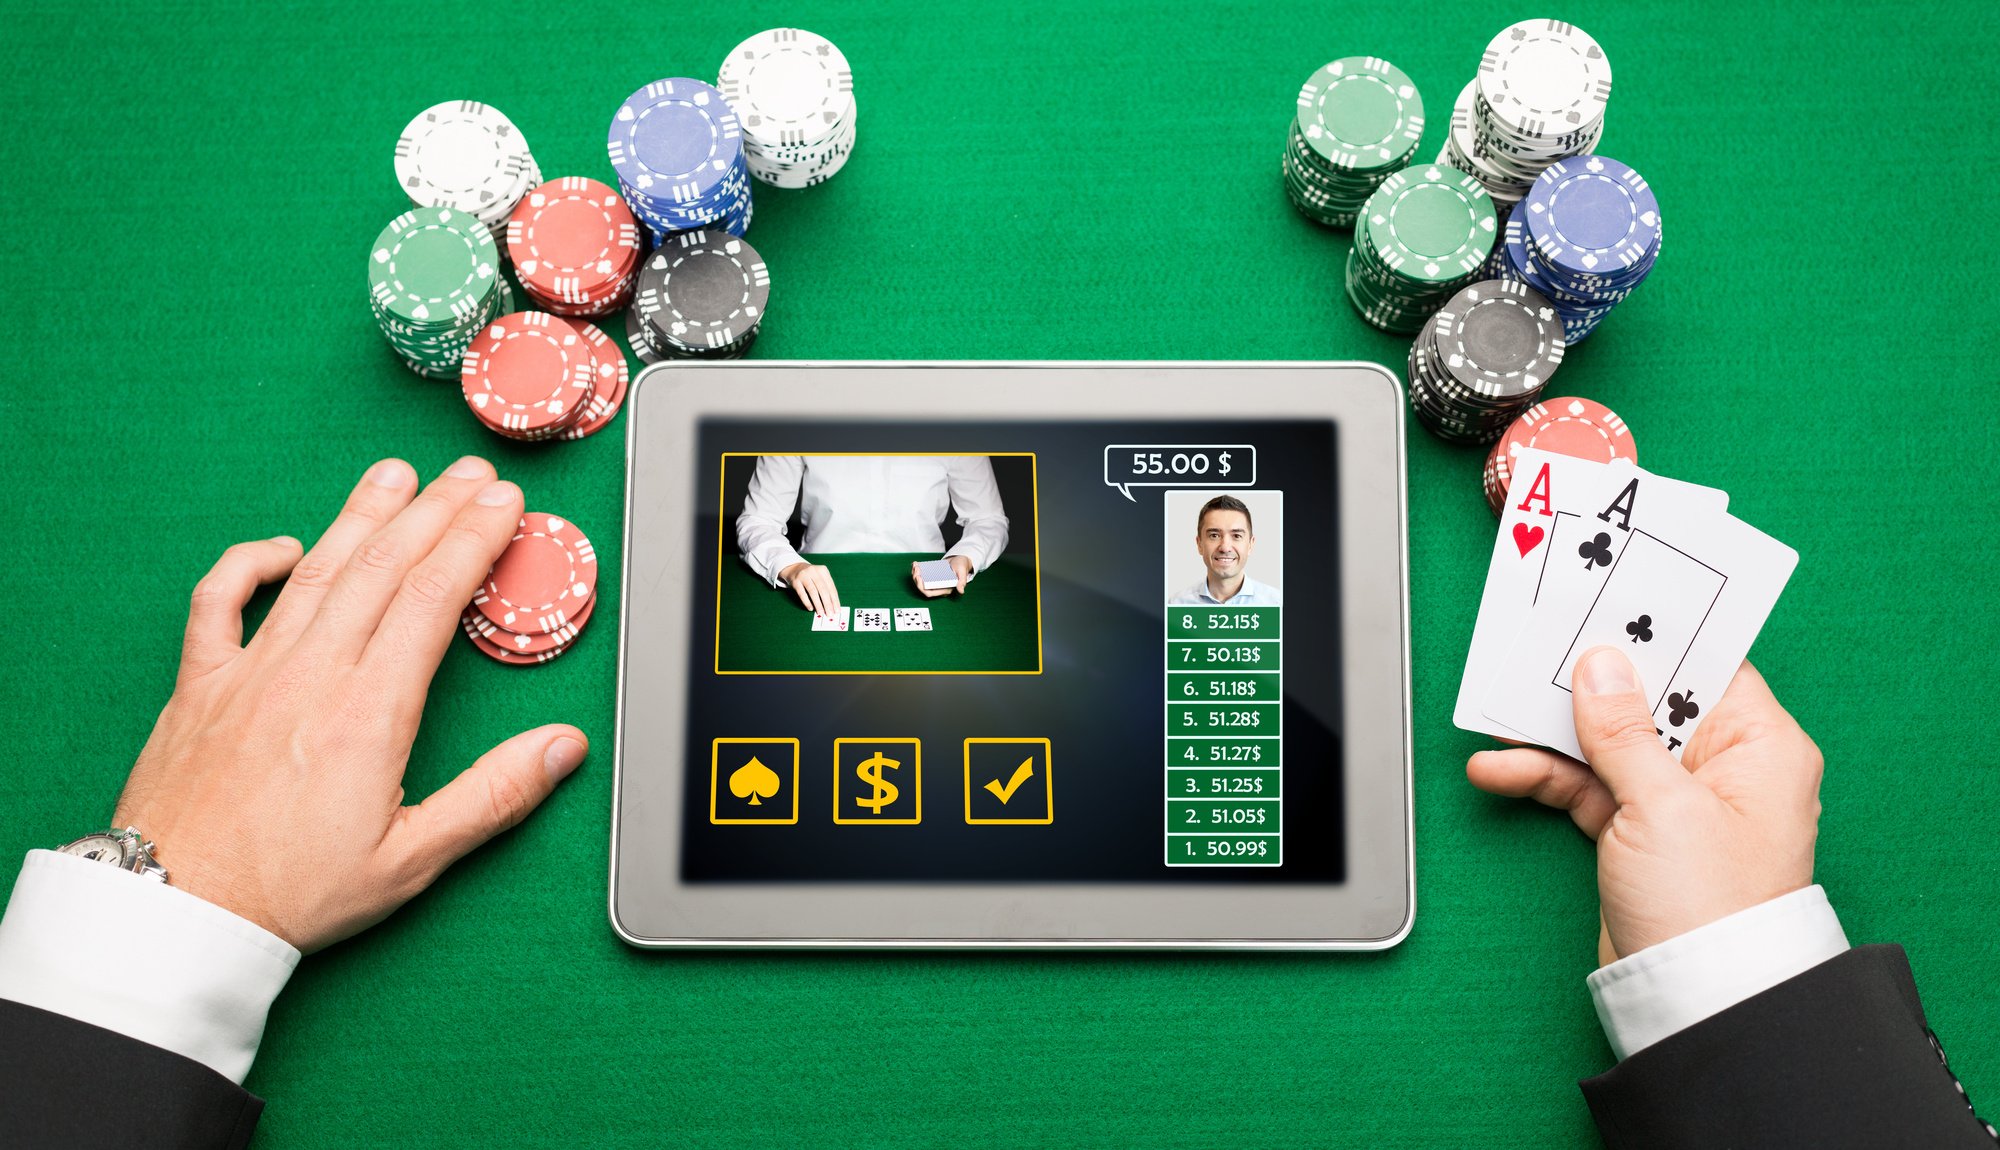 Vertrauenswürdige Online Casinos - Nicht für jedermann